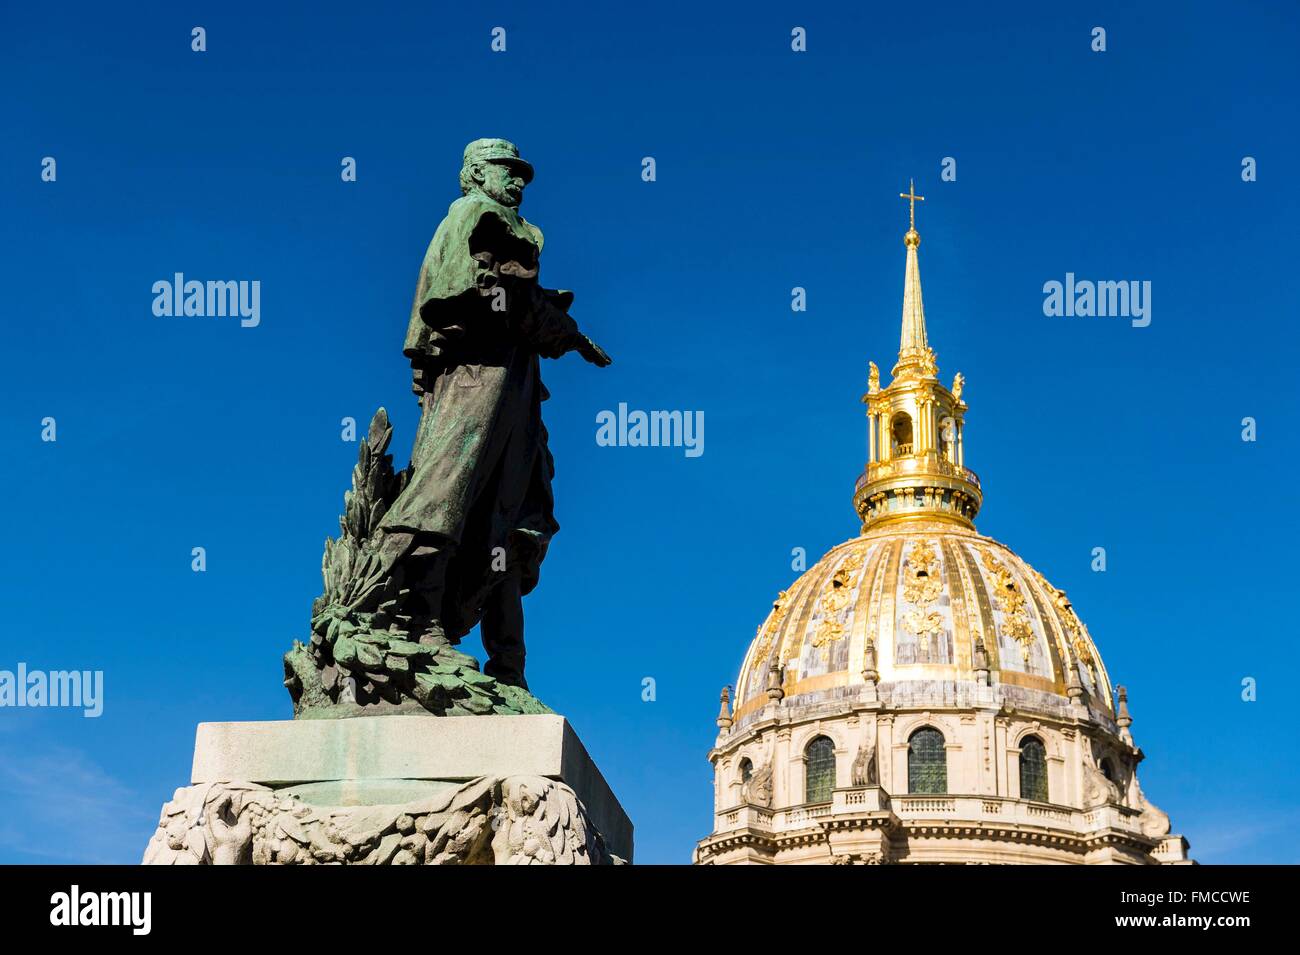 France, Paris, région classée au Patrimoine Mondial de l'UNESCO, la Cathédrale Saint Louis des Invalides, Marechal Gallieni statue Banque D'Images